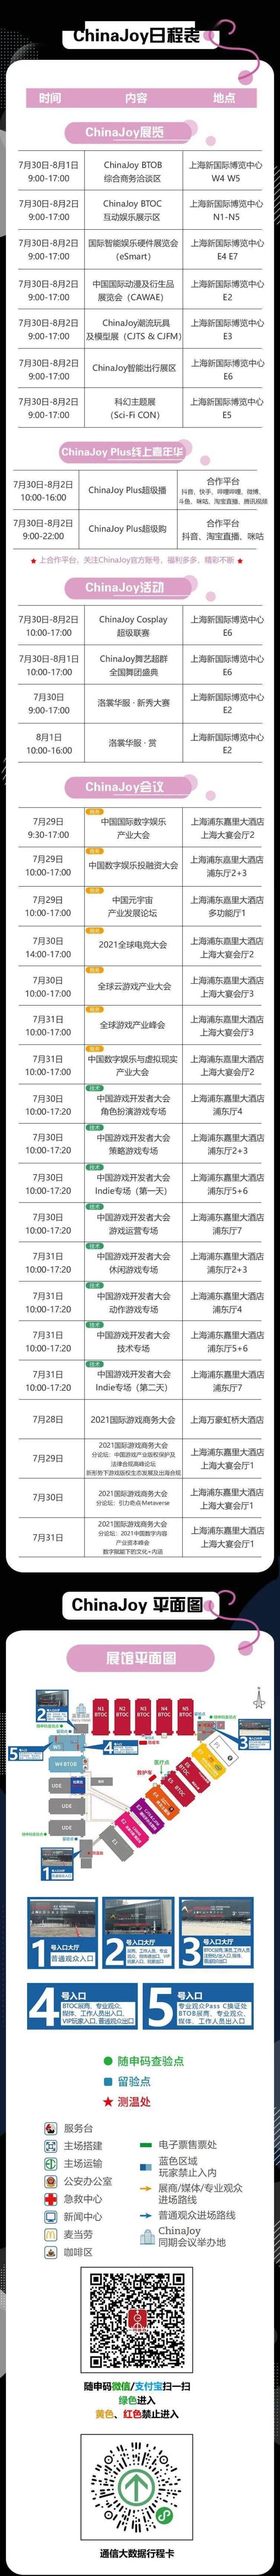 2021第十九届ChinaJoy展前预览 综合信息篇发布